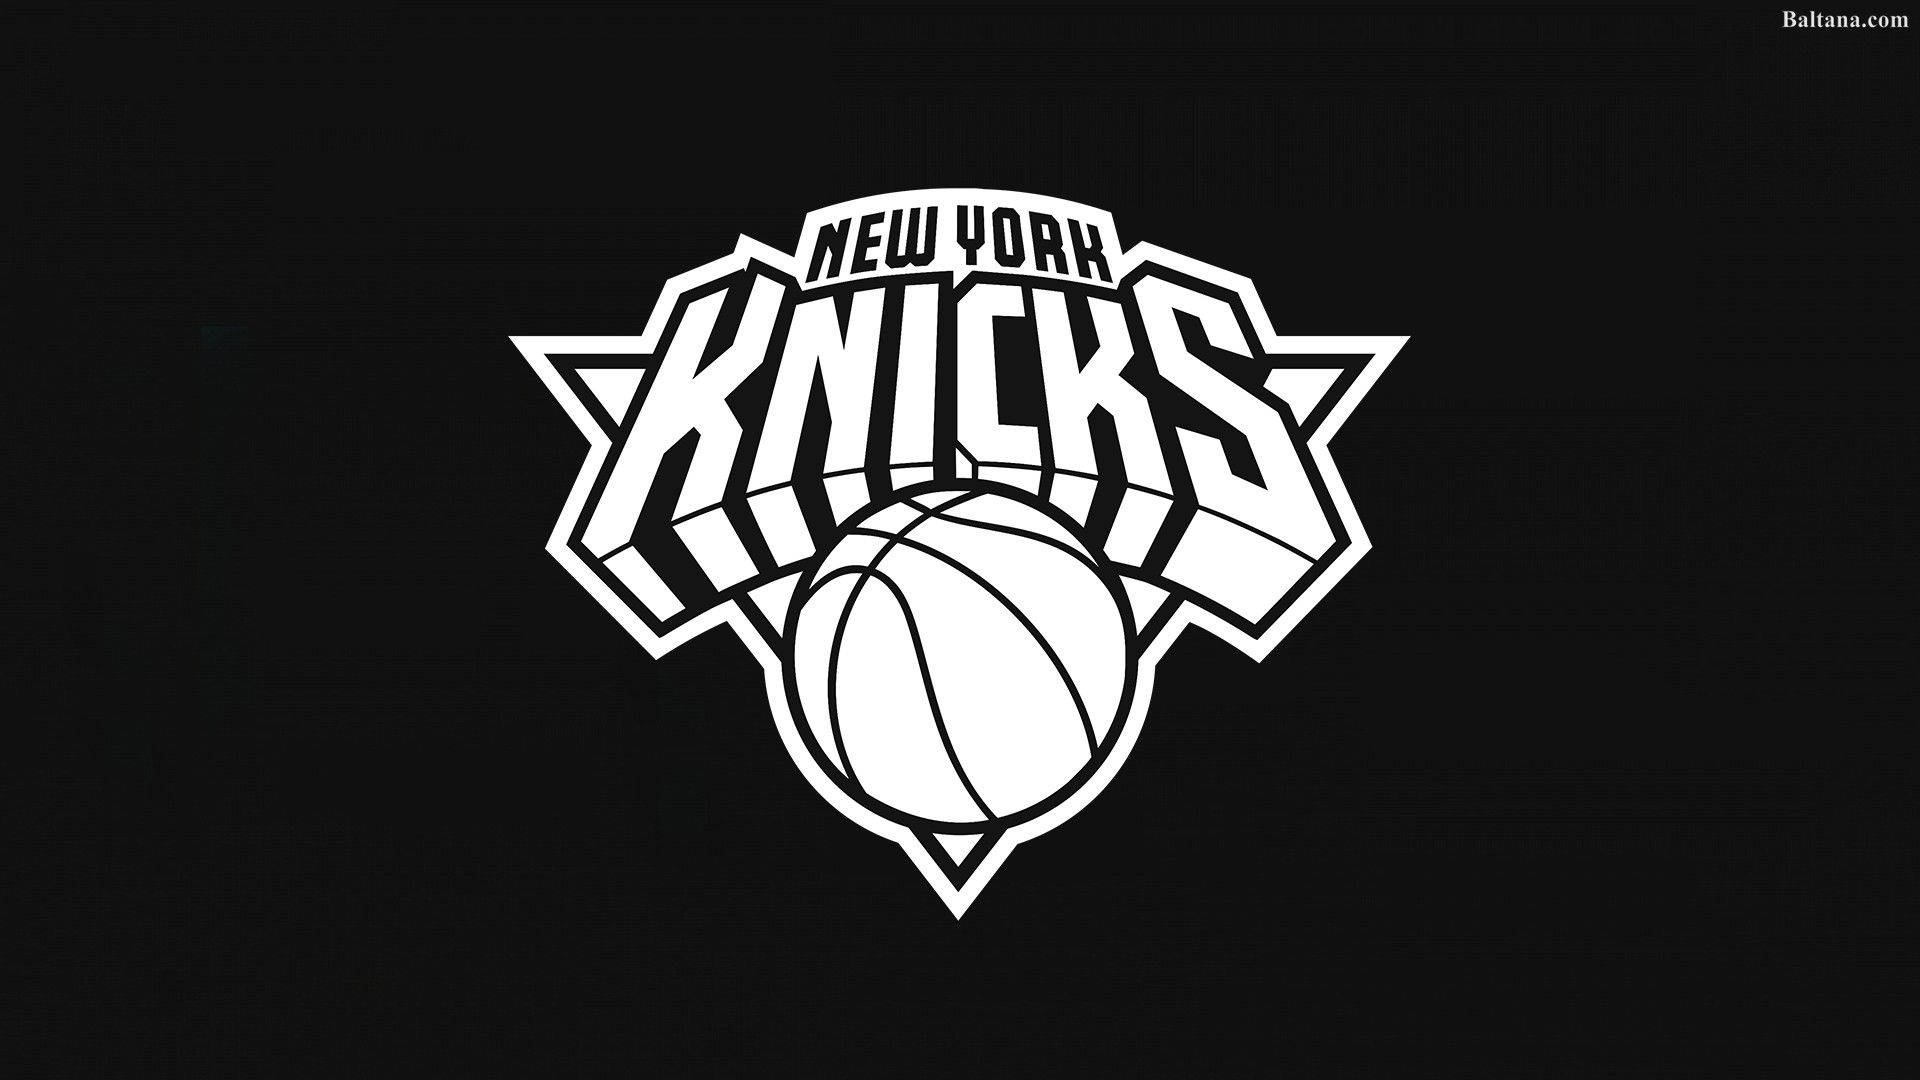 New York Knicks Black And White Wallpaper